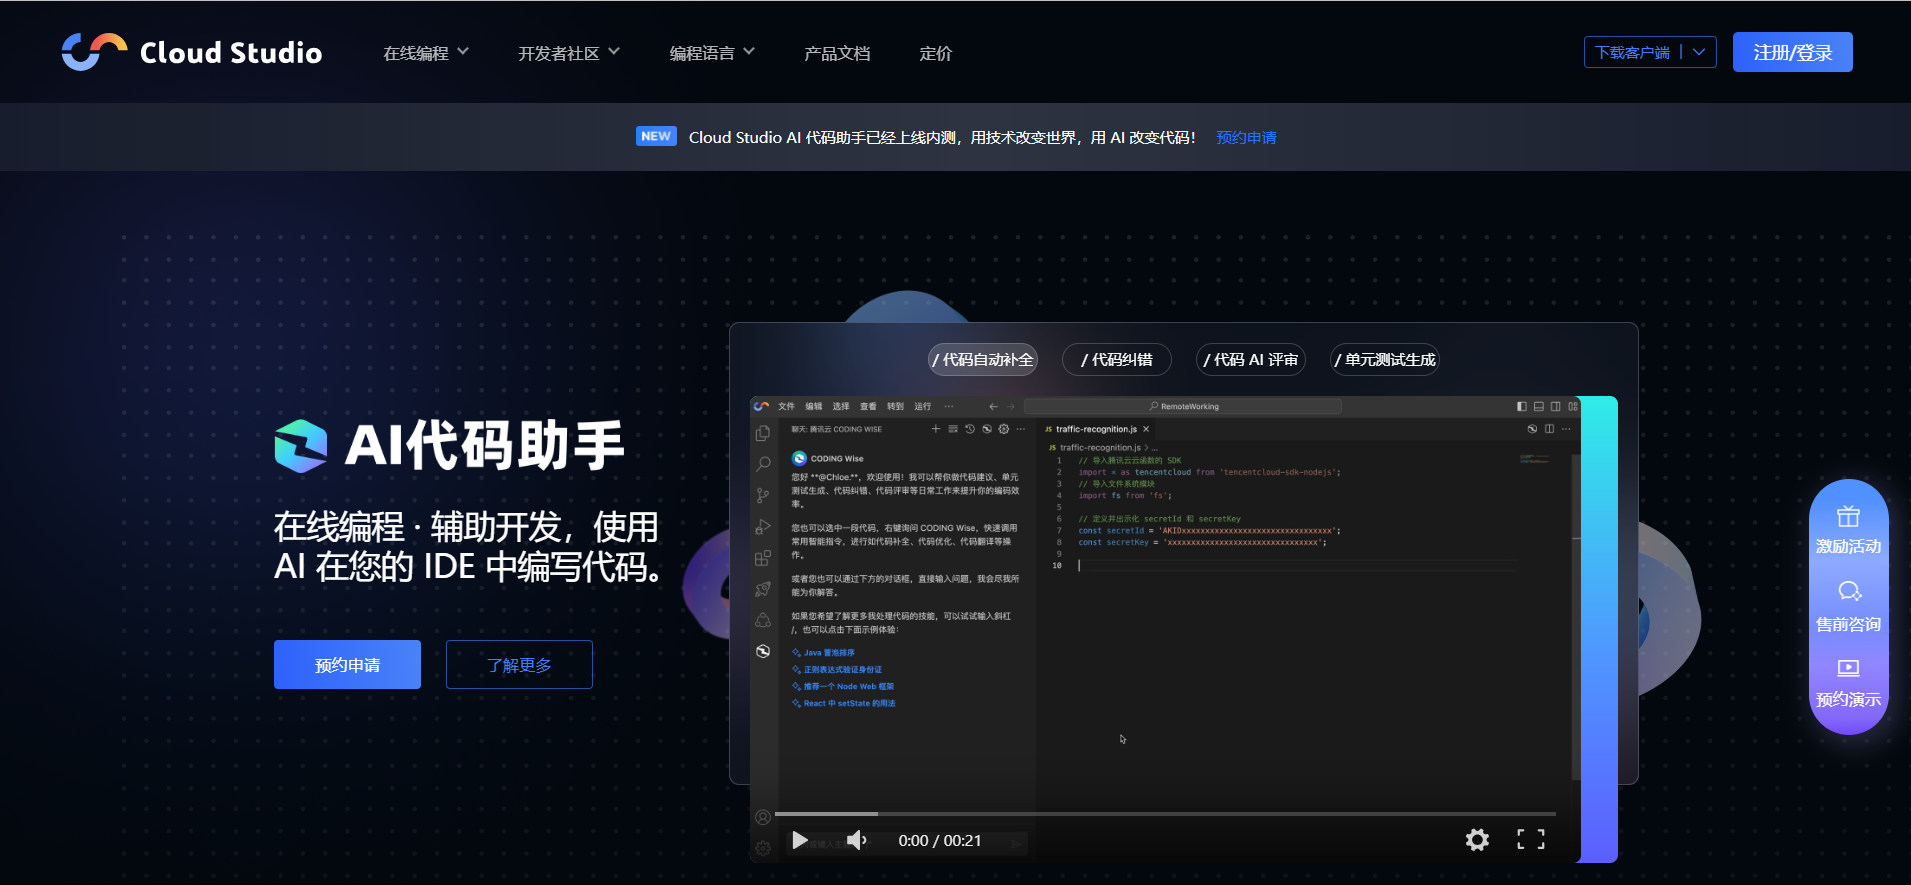 【腾讯云 Cloud Studio 实战训练营】Hexo 框架 Butterfly 主题搭建个人博客_重新编译